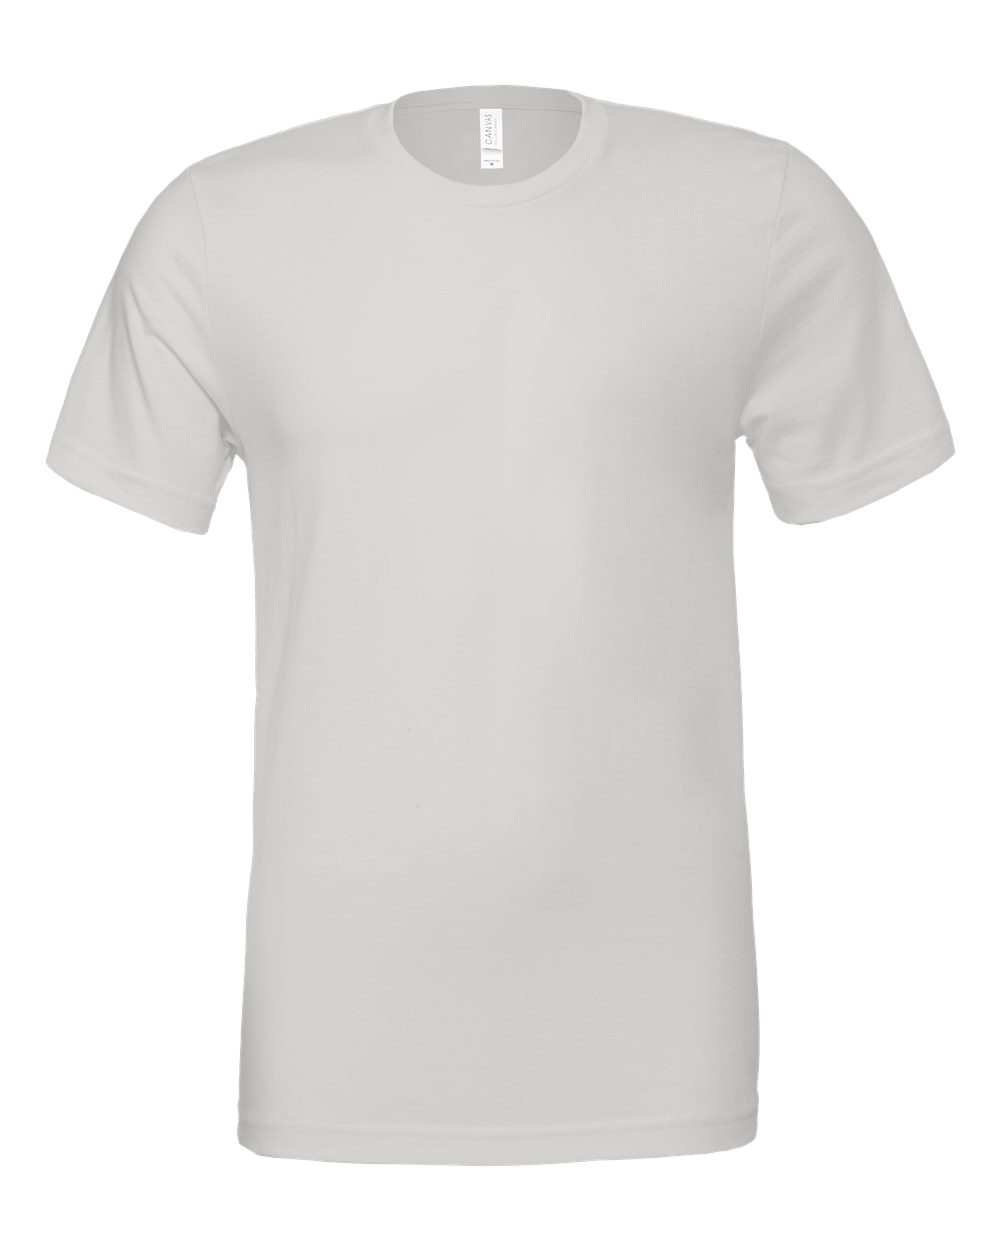 Bella+Canvas Jersey T-Shirt - Original